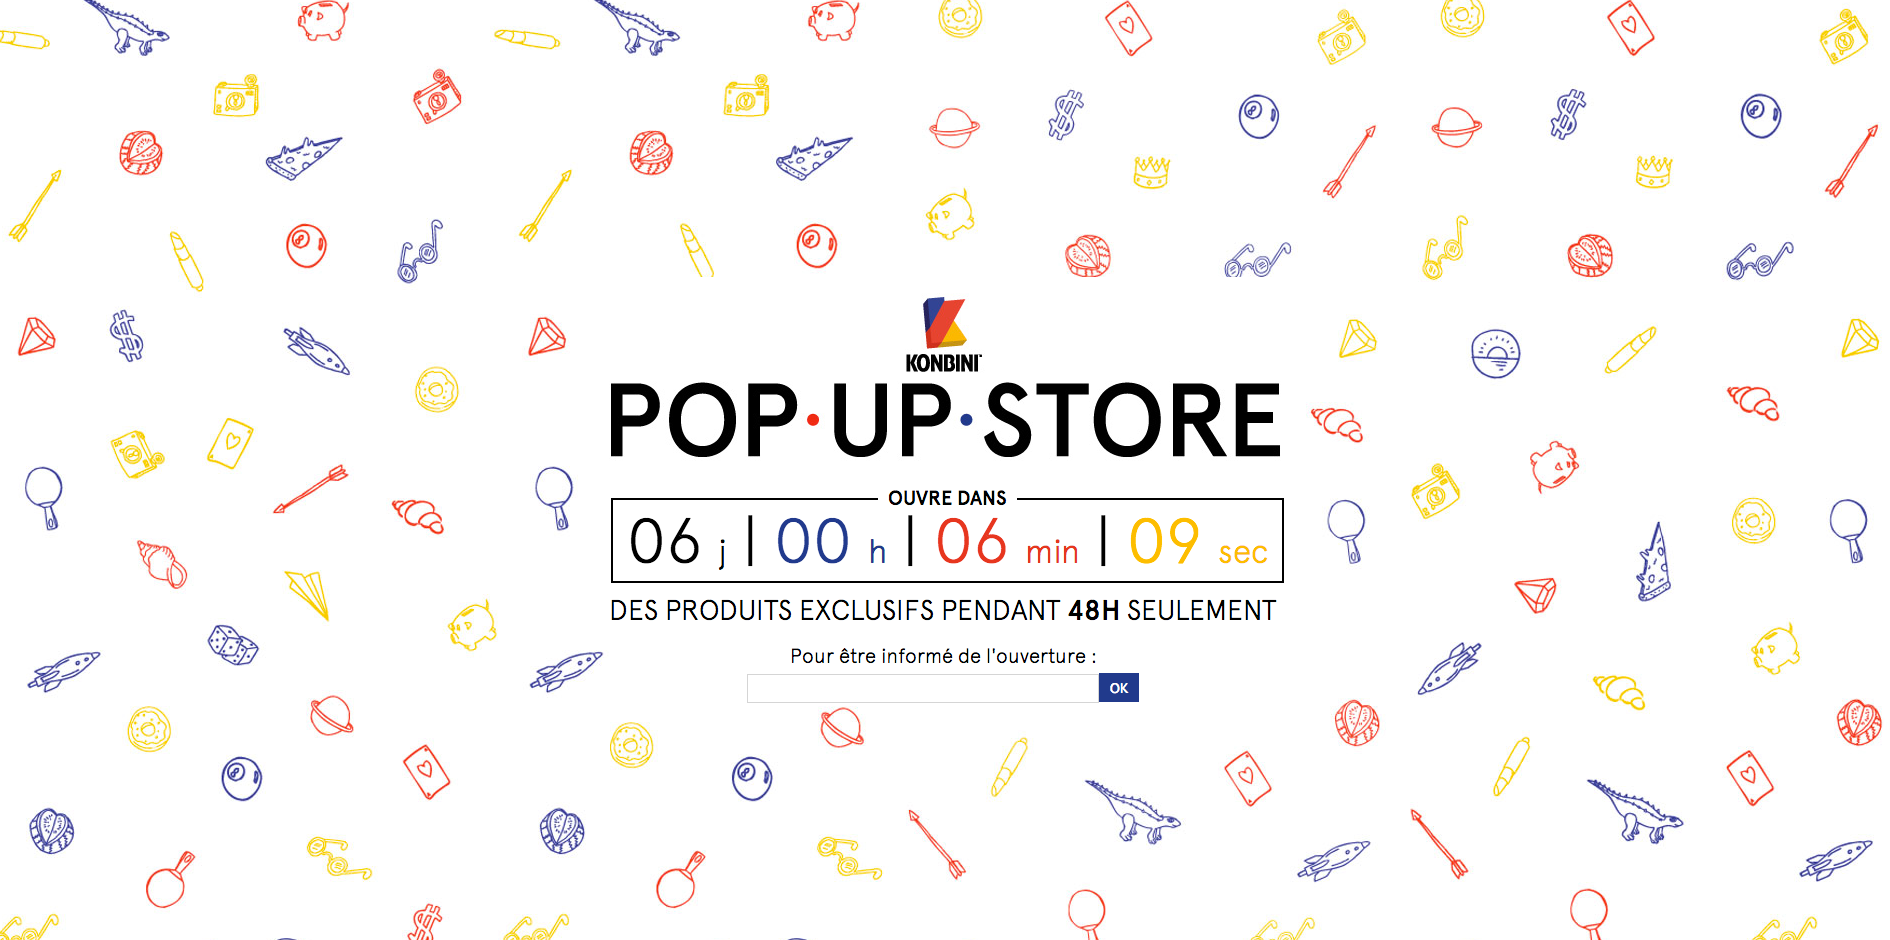 Le Konbini Pop-Up Store est de retour pour sa troisième édition